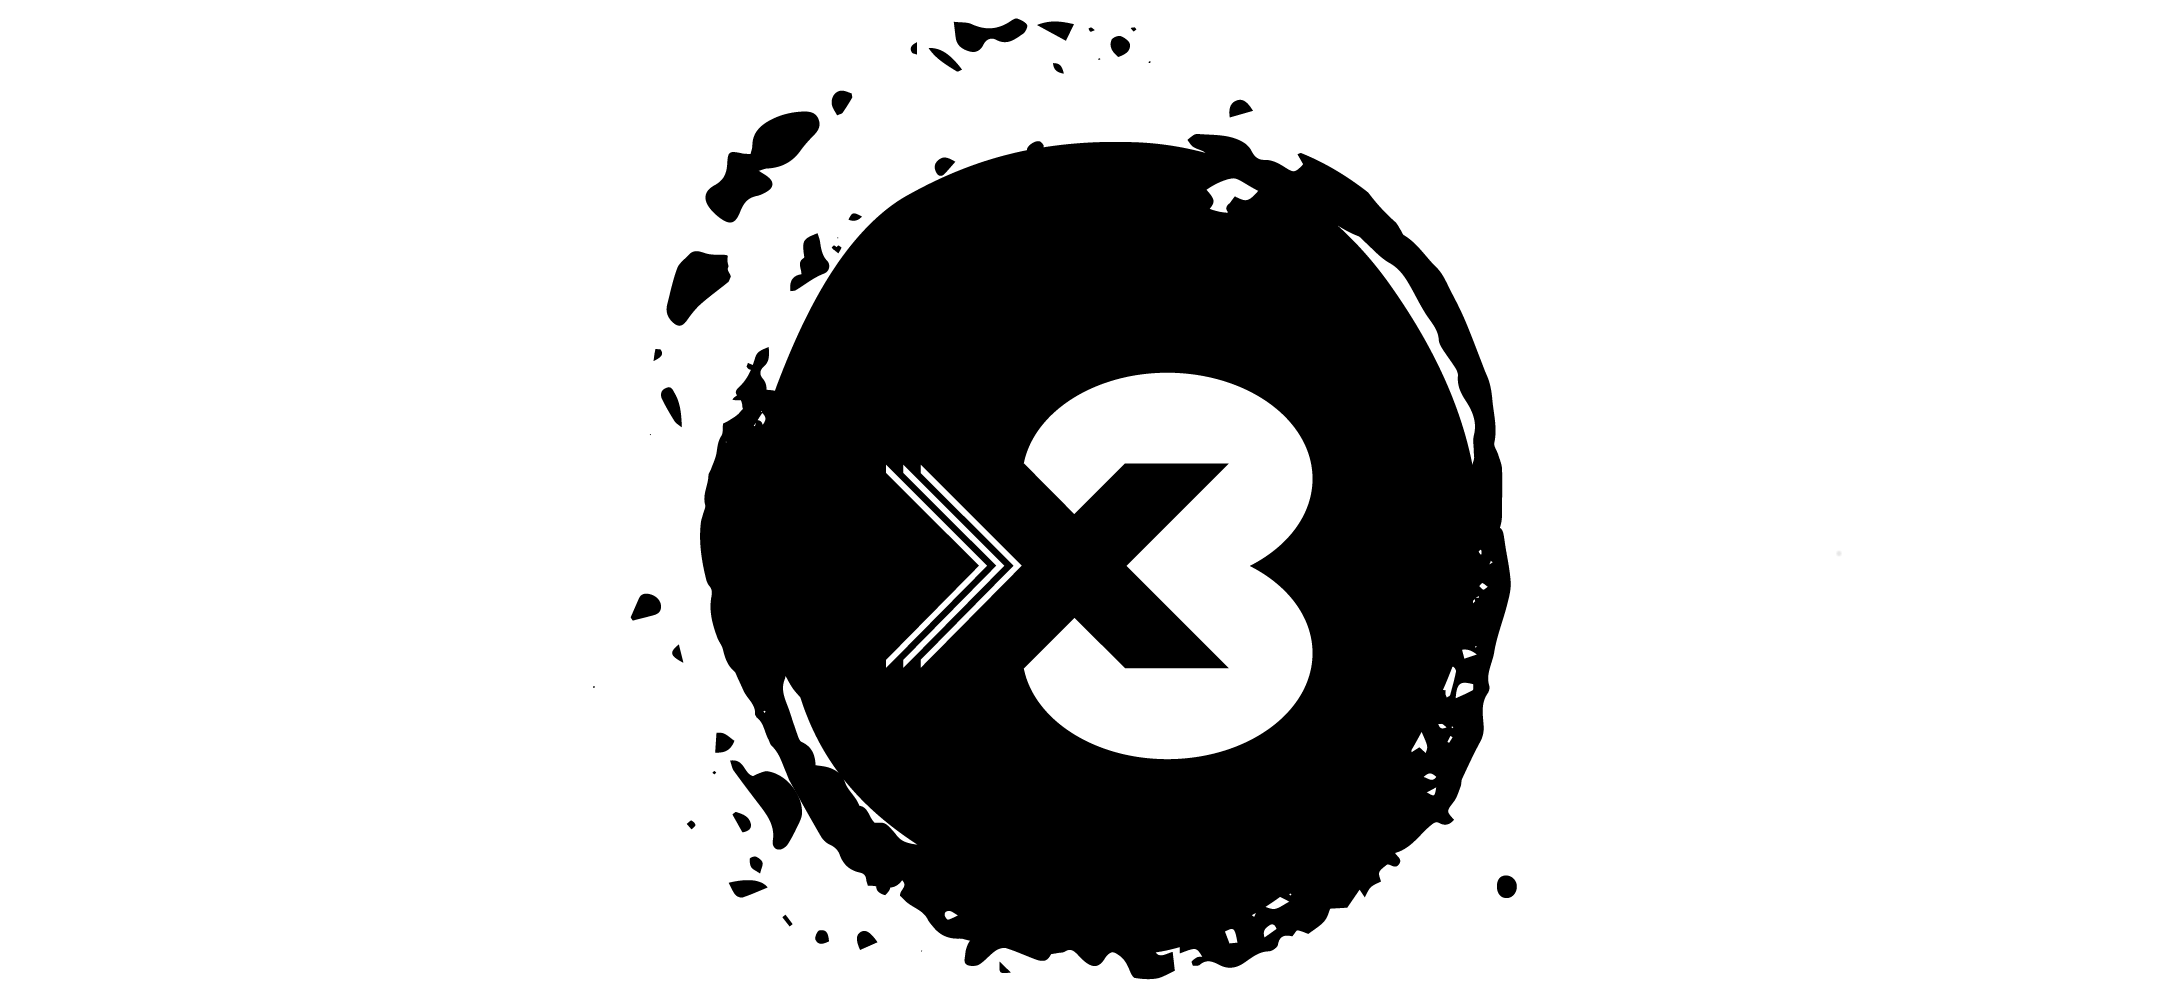 3x3 логотип. Логотип x3. Логотип 3х3. 3 На 3 лого.